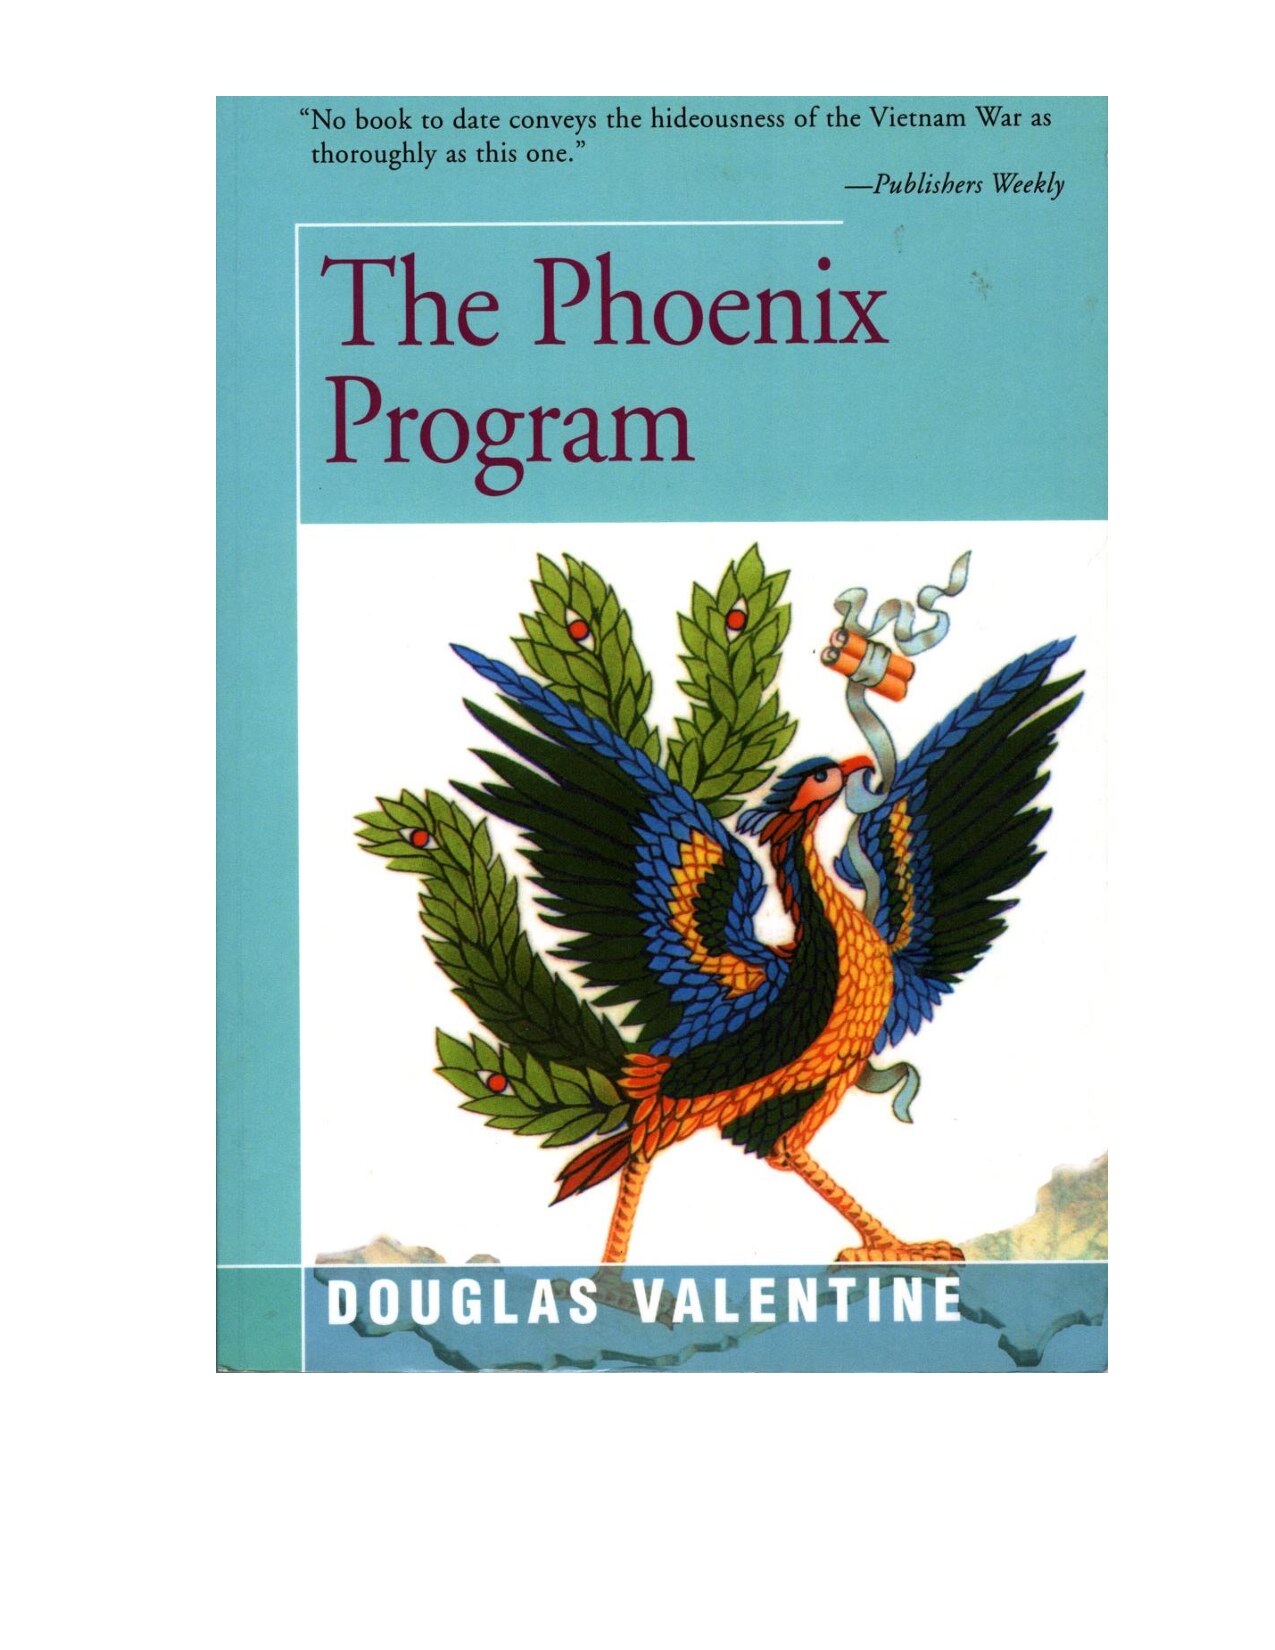 Valentine, Douglas; The Phoenix Program